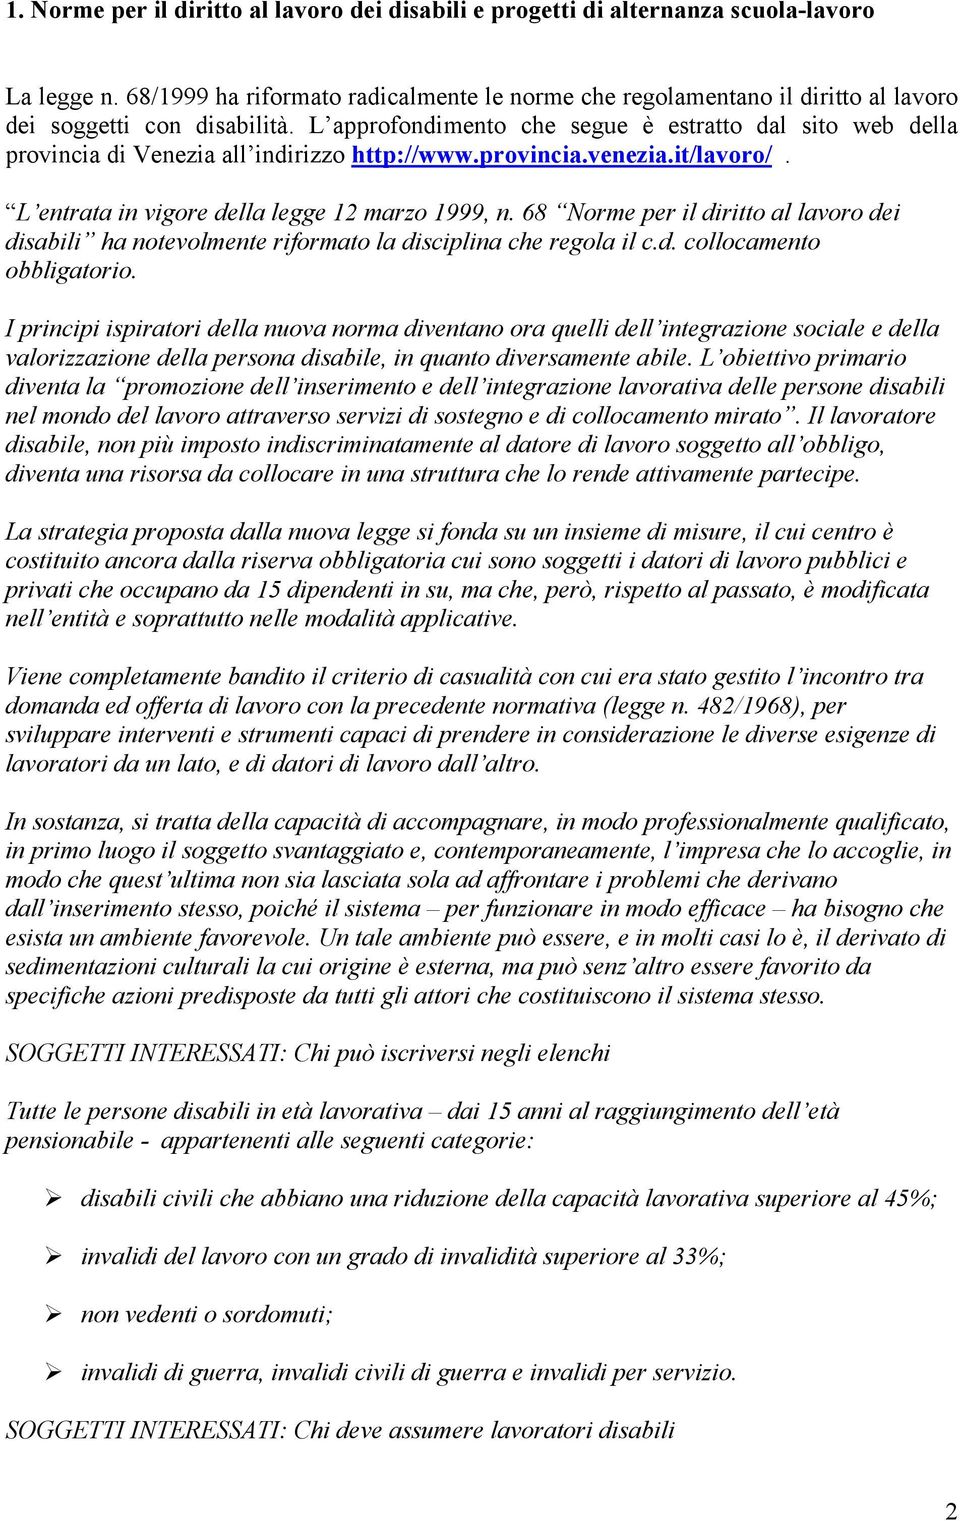 L approfondimento che segue è estratto dal sito web della provincia di Venezia all indirizzo http://www.provincia.venezia.it/lavoro/. L entrata in vigore della legge 12 marzo 1999, n.